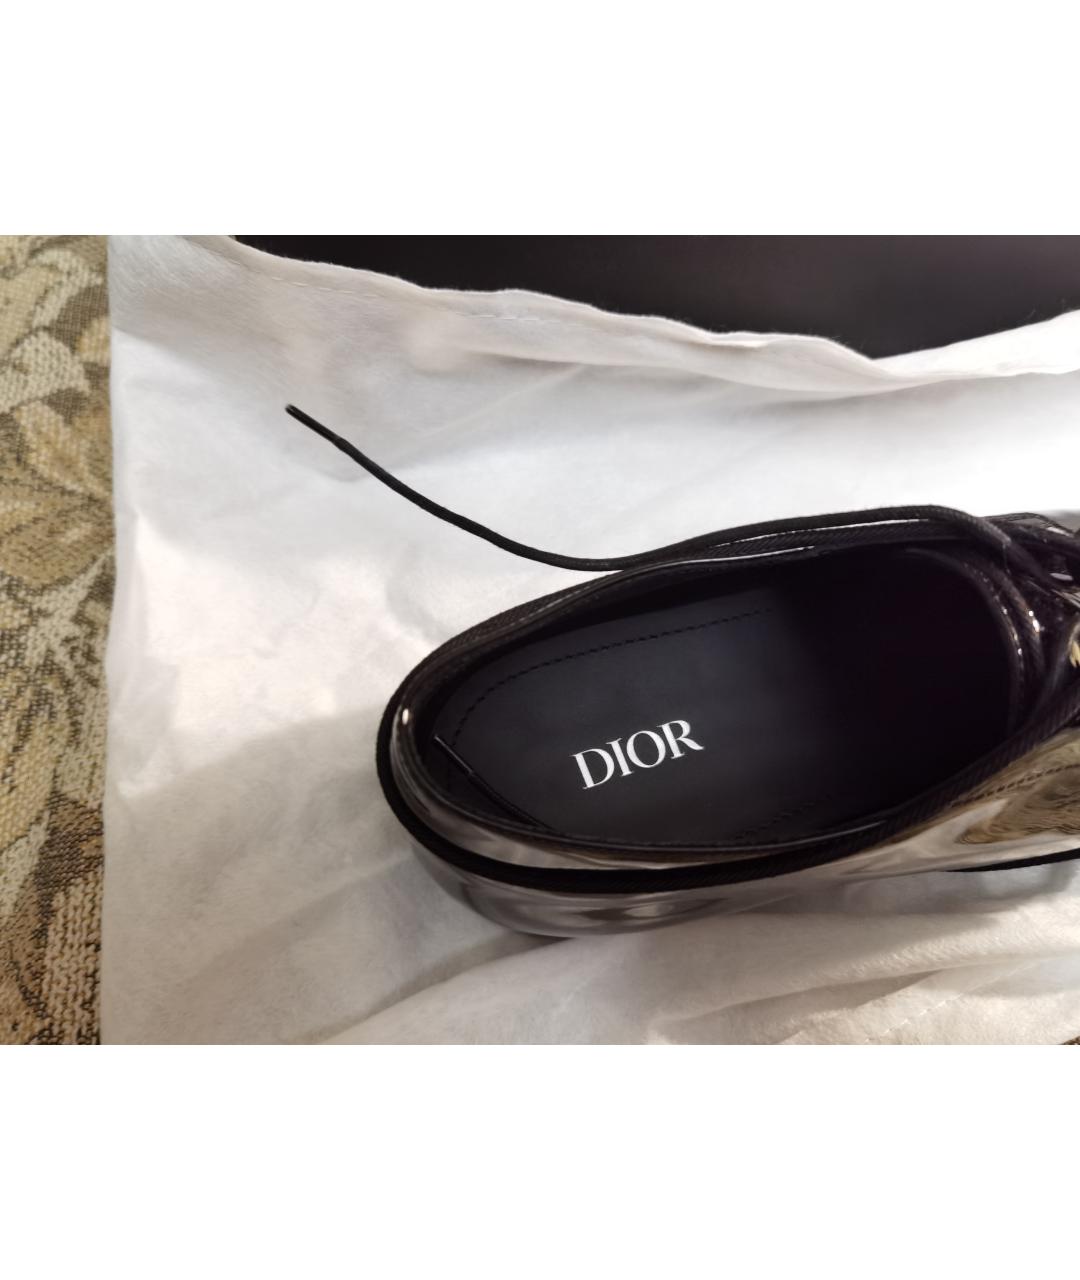 CHRISTIAN DIOR PRE-OWNED Черные туфли из лакированной кожи, фото 3